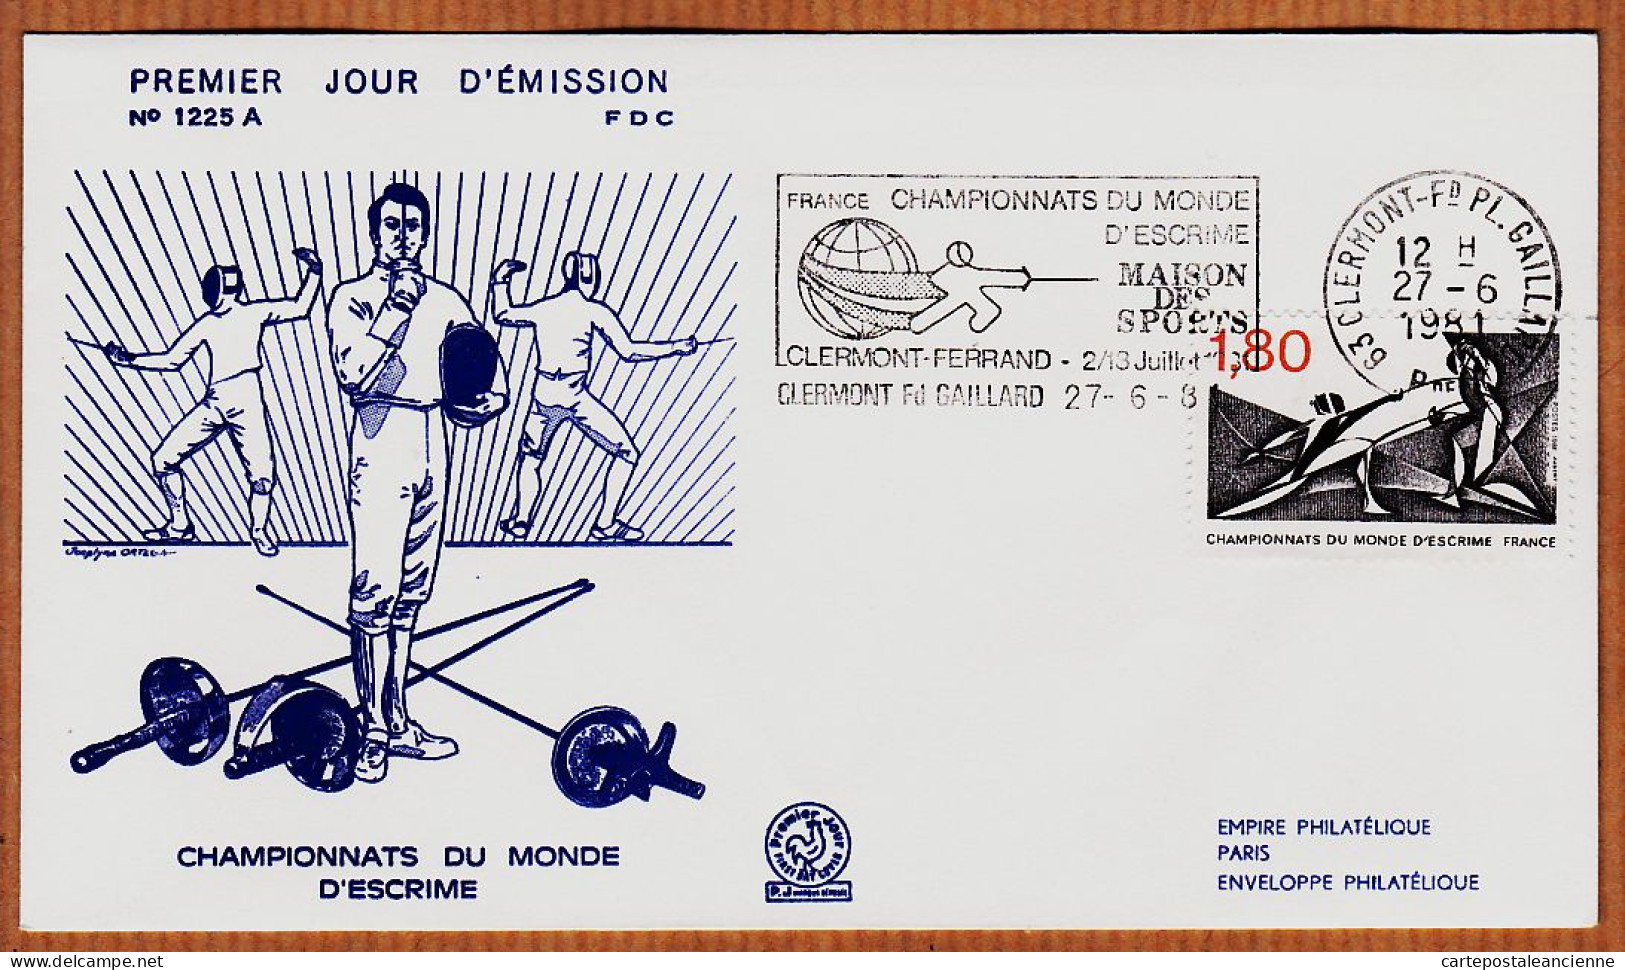 04765 / FDC CHAMPIONNATS Du MONDE D' ESCRIME 27 Juin 1981 Flamme CLERMONT-FERRAND Premier Jour Emission 1225 A - Escrime